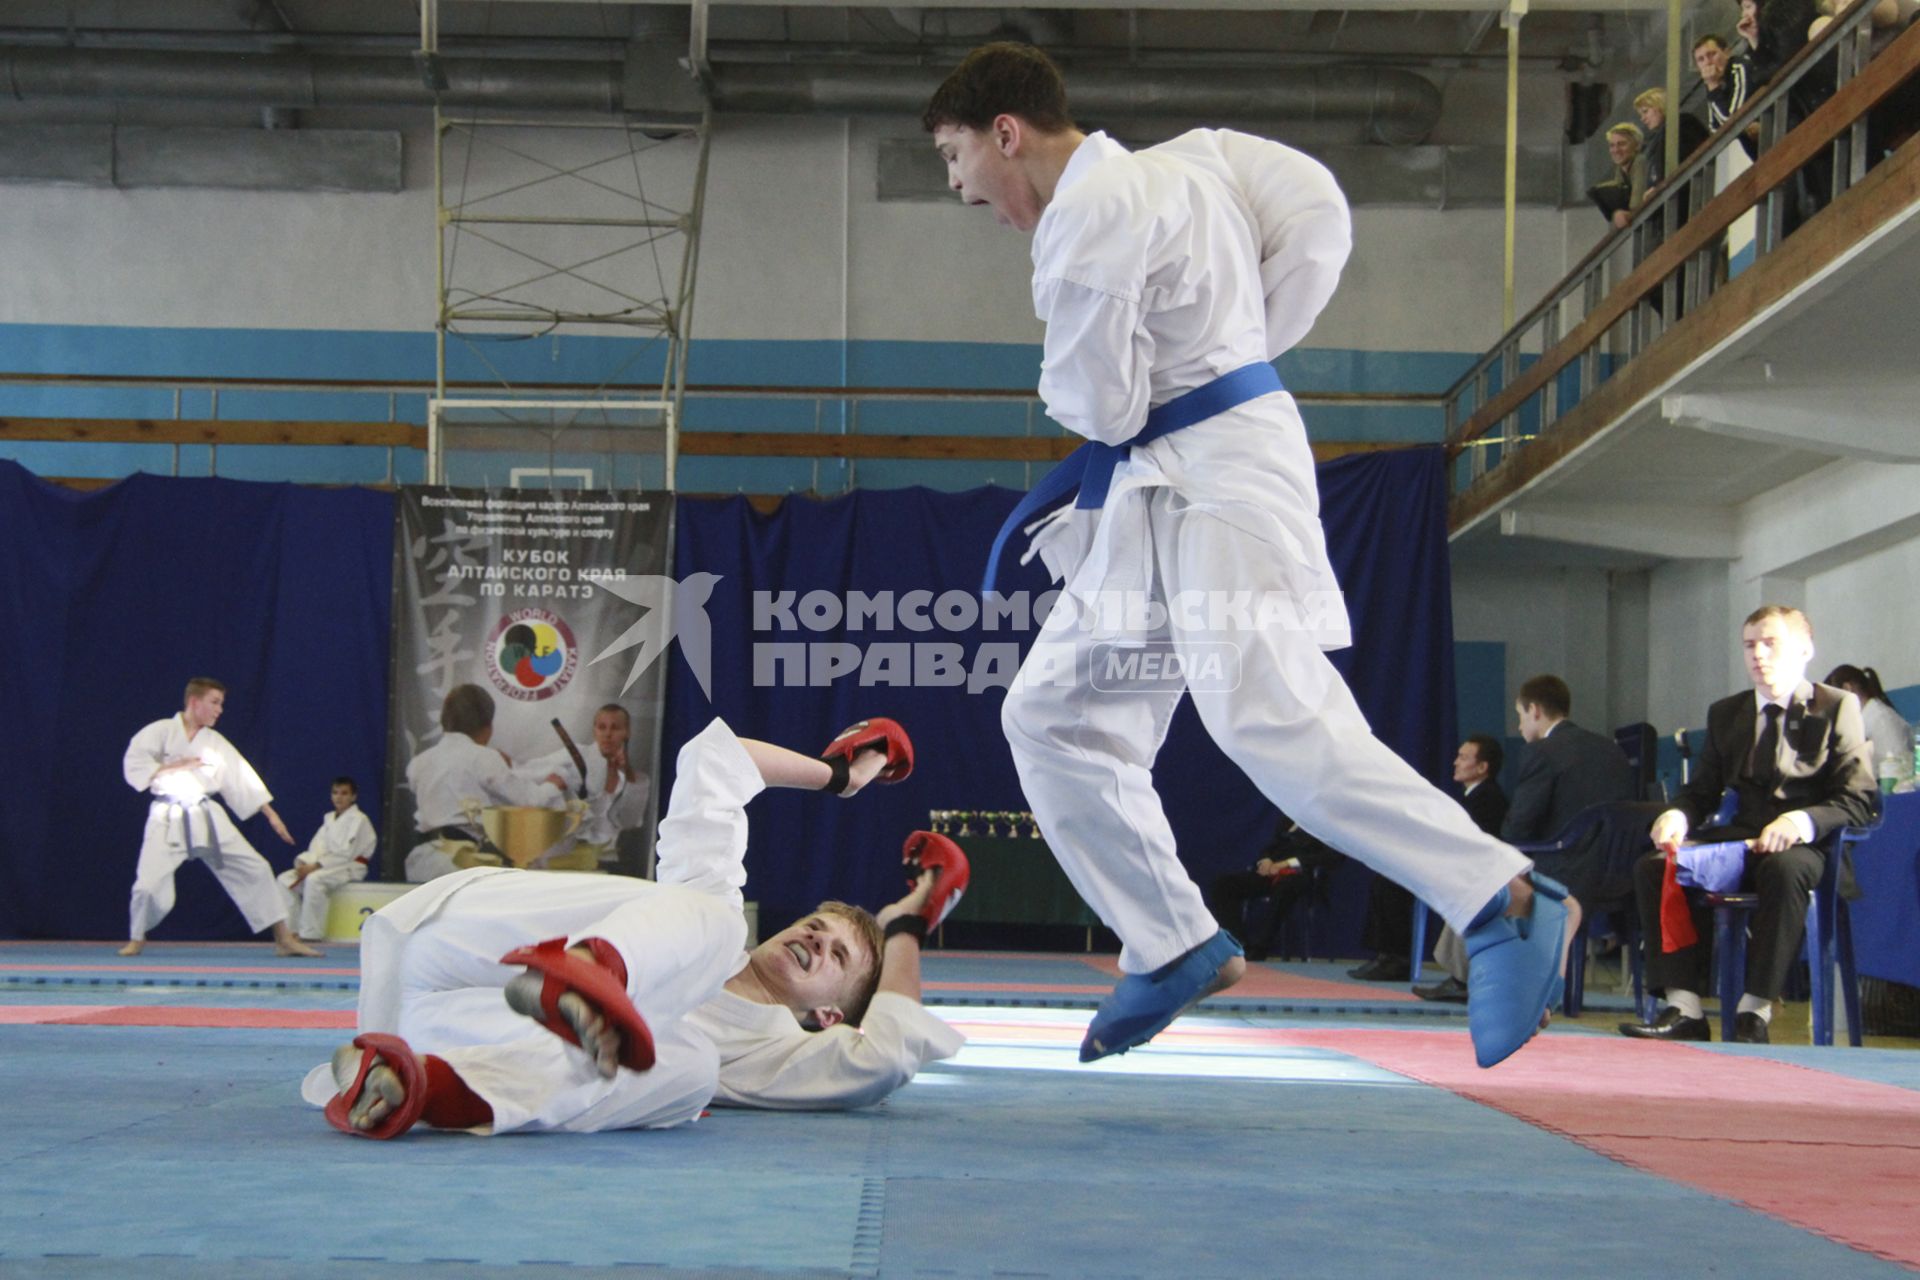 Кубок Алтайского края по карате WKF. На снимке: мужчины дерутся.